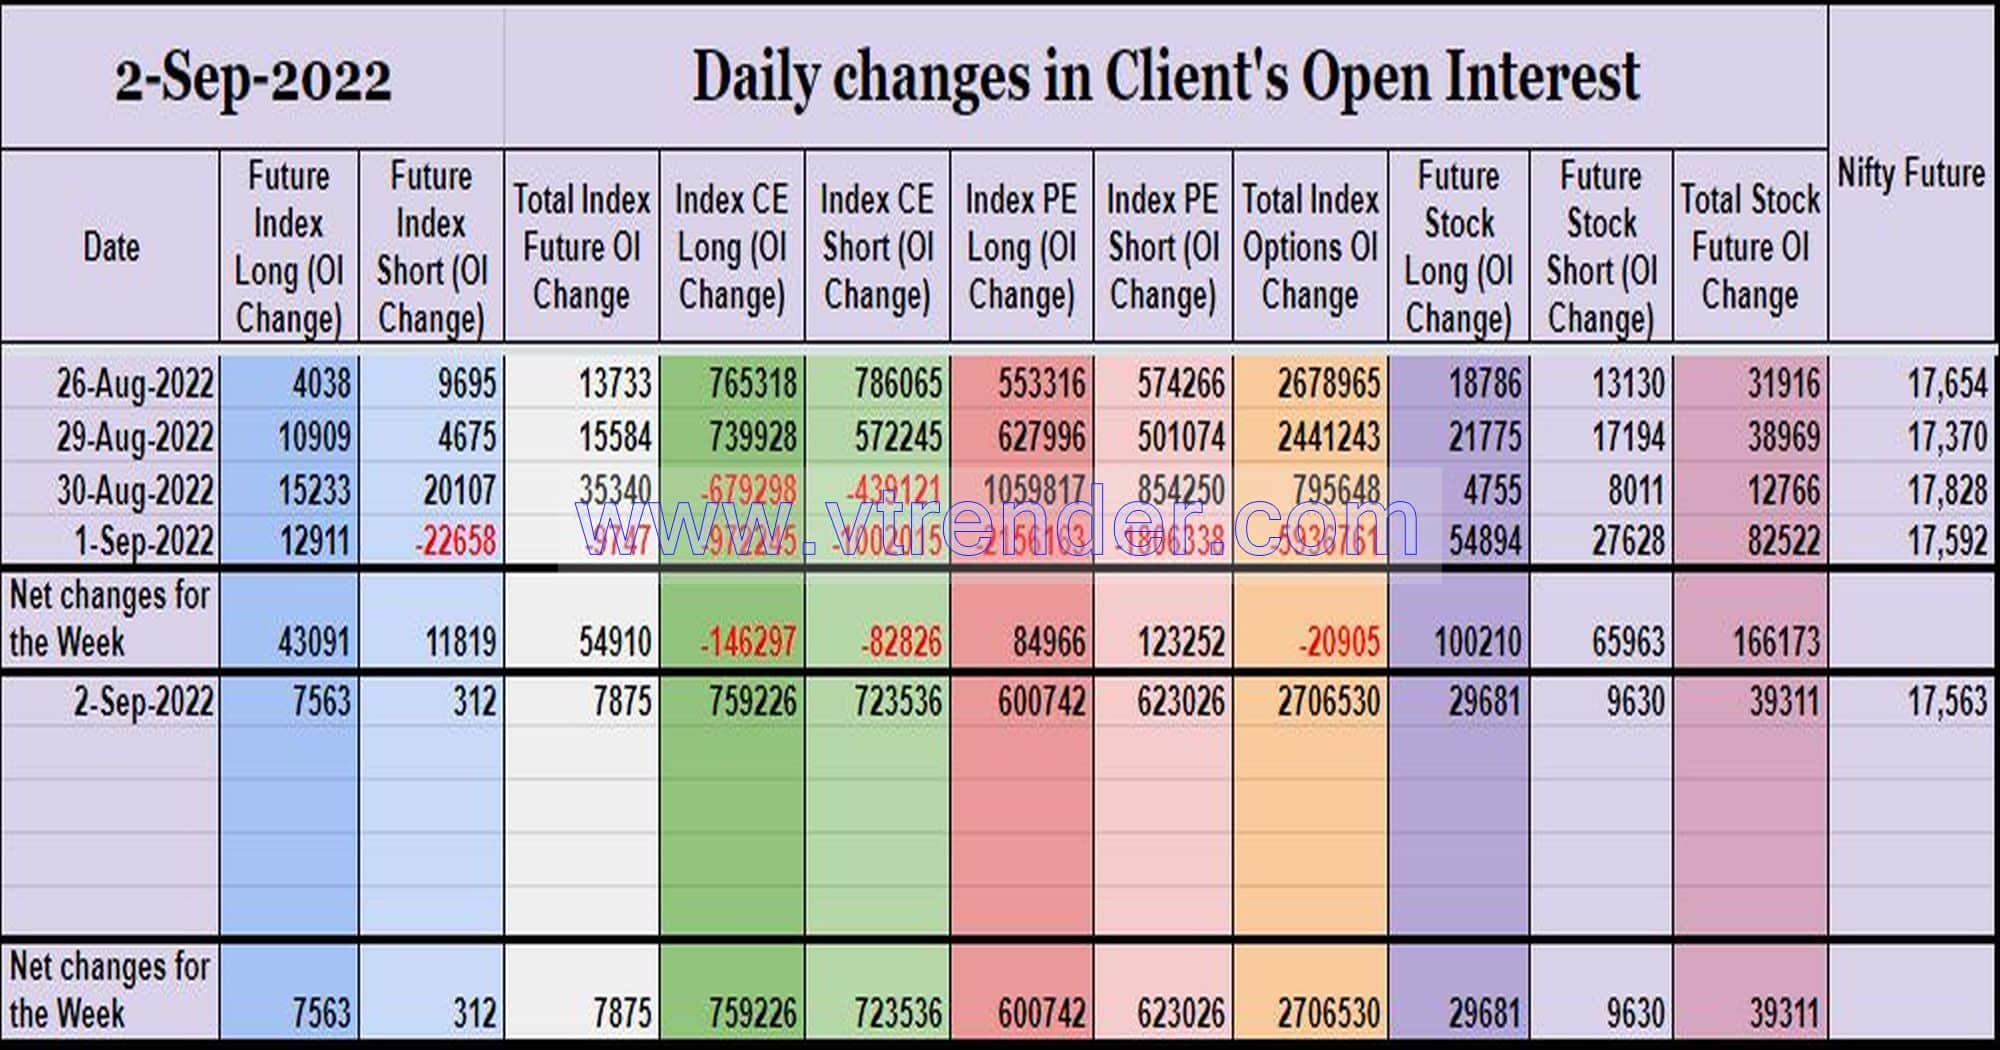 Clientoi02Sep Participantwise Open Interest (Weekly Changes) – 2Nd Sep 2022 Client, Dii, Fii, Open Interest, Participantwise Open Interest, Props